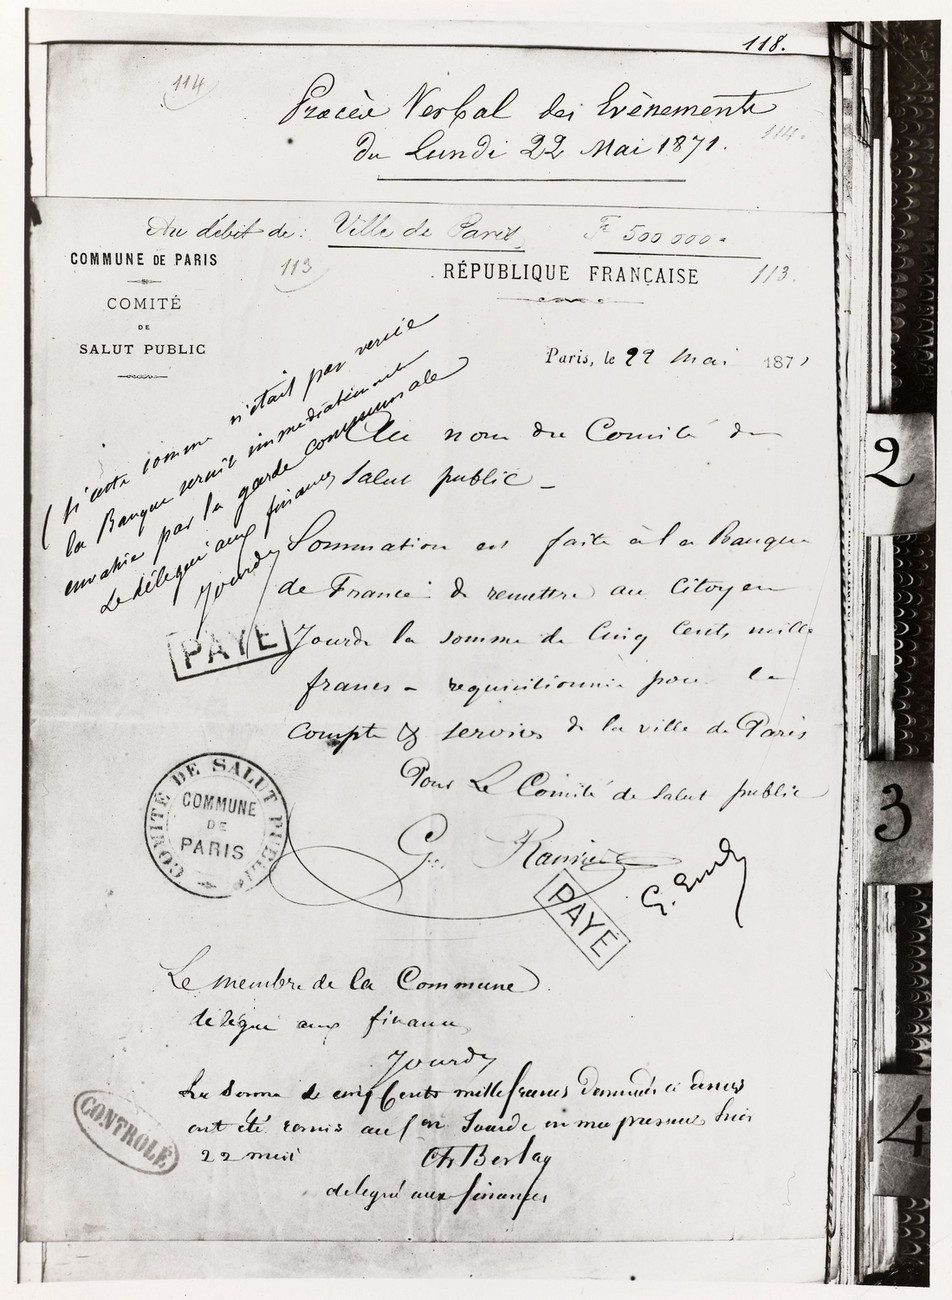 Document officiel pour la réquisition d'une somme d'argent de la part du Comité du salut public auprès de la Banque de France, 22 mai 1871 (CC0 Paris Musées / Musée Carnavalet)